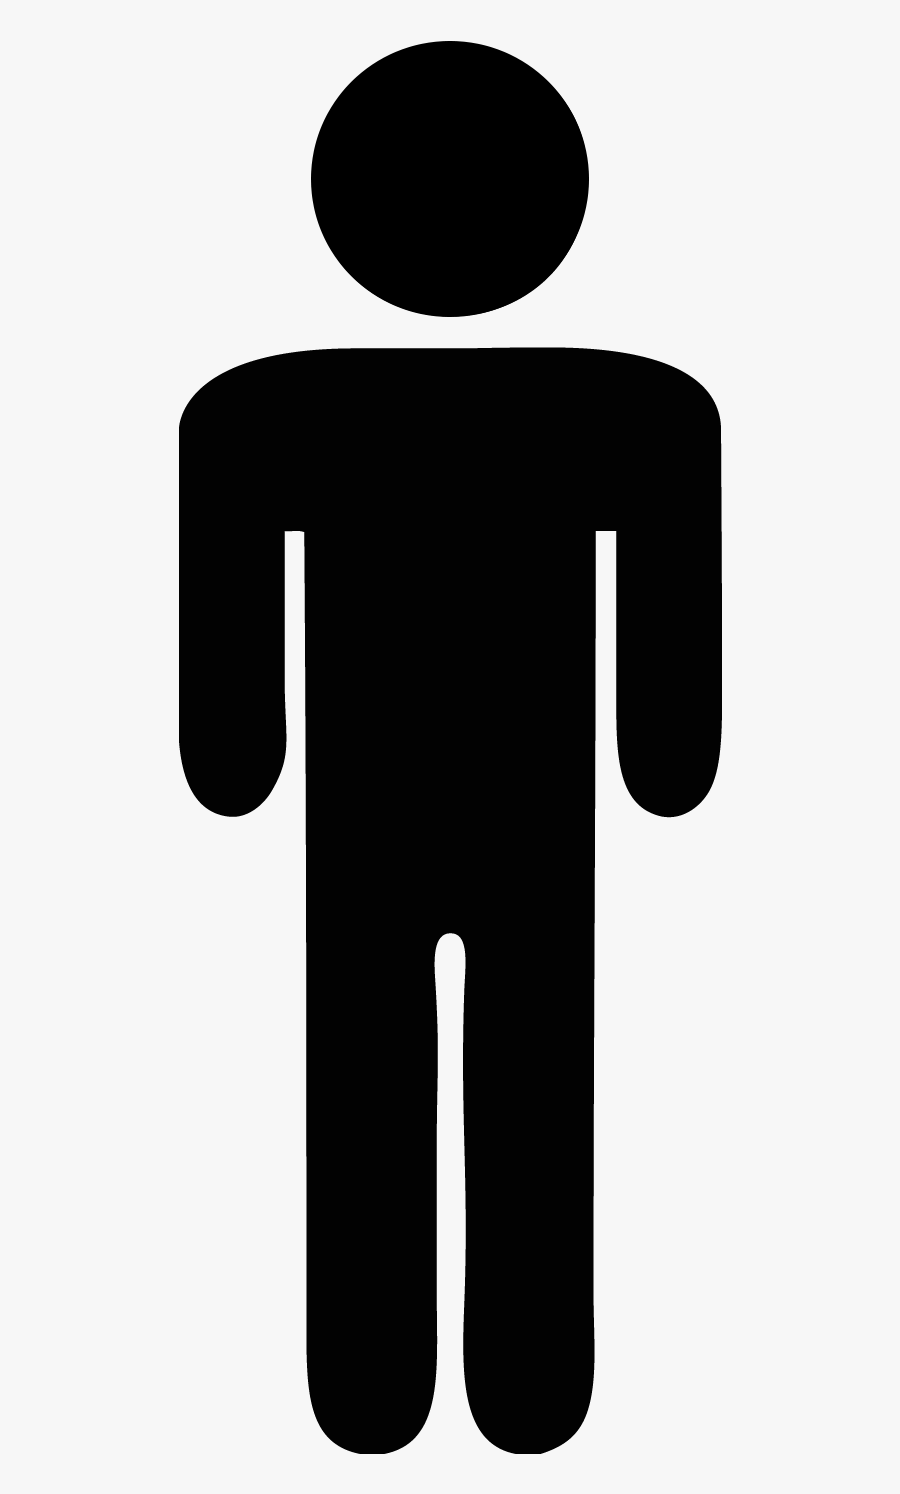 Stick Figure Guy - Perfil Do Consumidor Brasileiro, Transparent Clipart